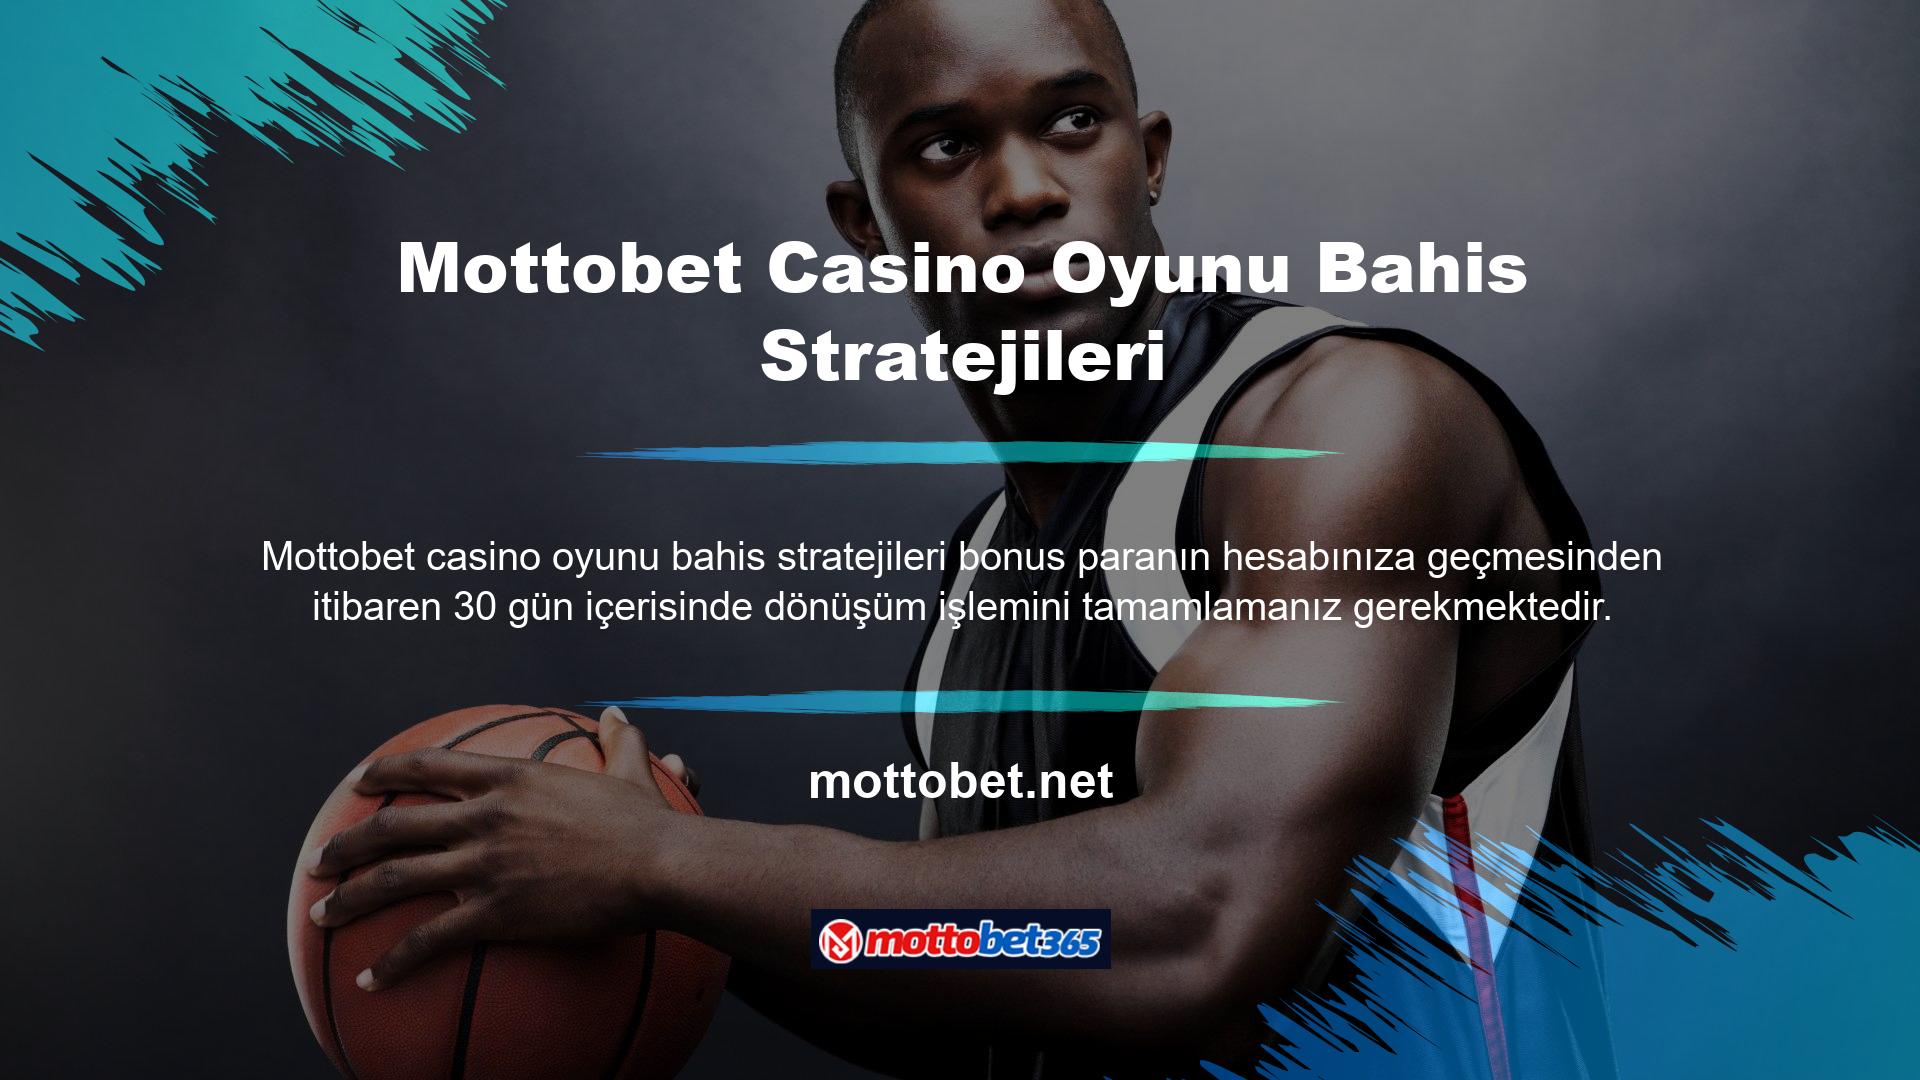 Mottobet Casino, web sitesini korumak için SSL şifrelemesi kullanıyor ve oyuncu verilerini kimlik hırsızlığından ve bilgisayar korsanlarından korumaya çalışıyor